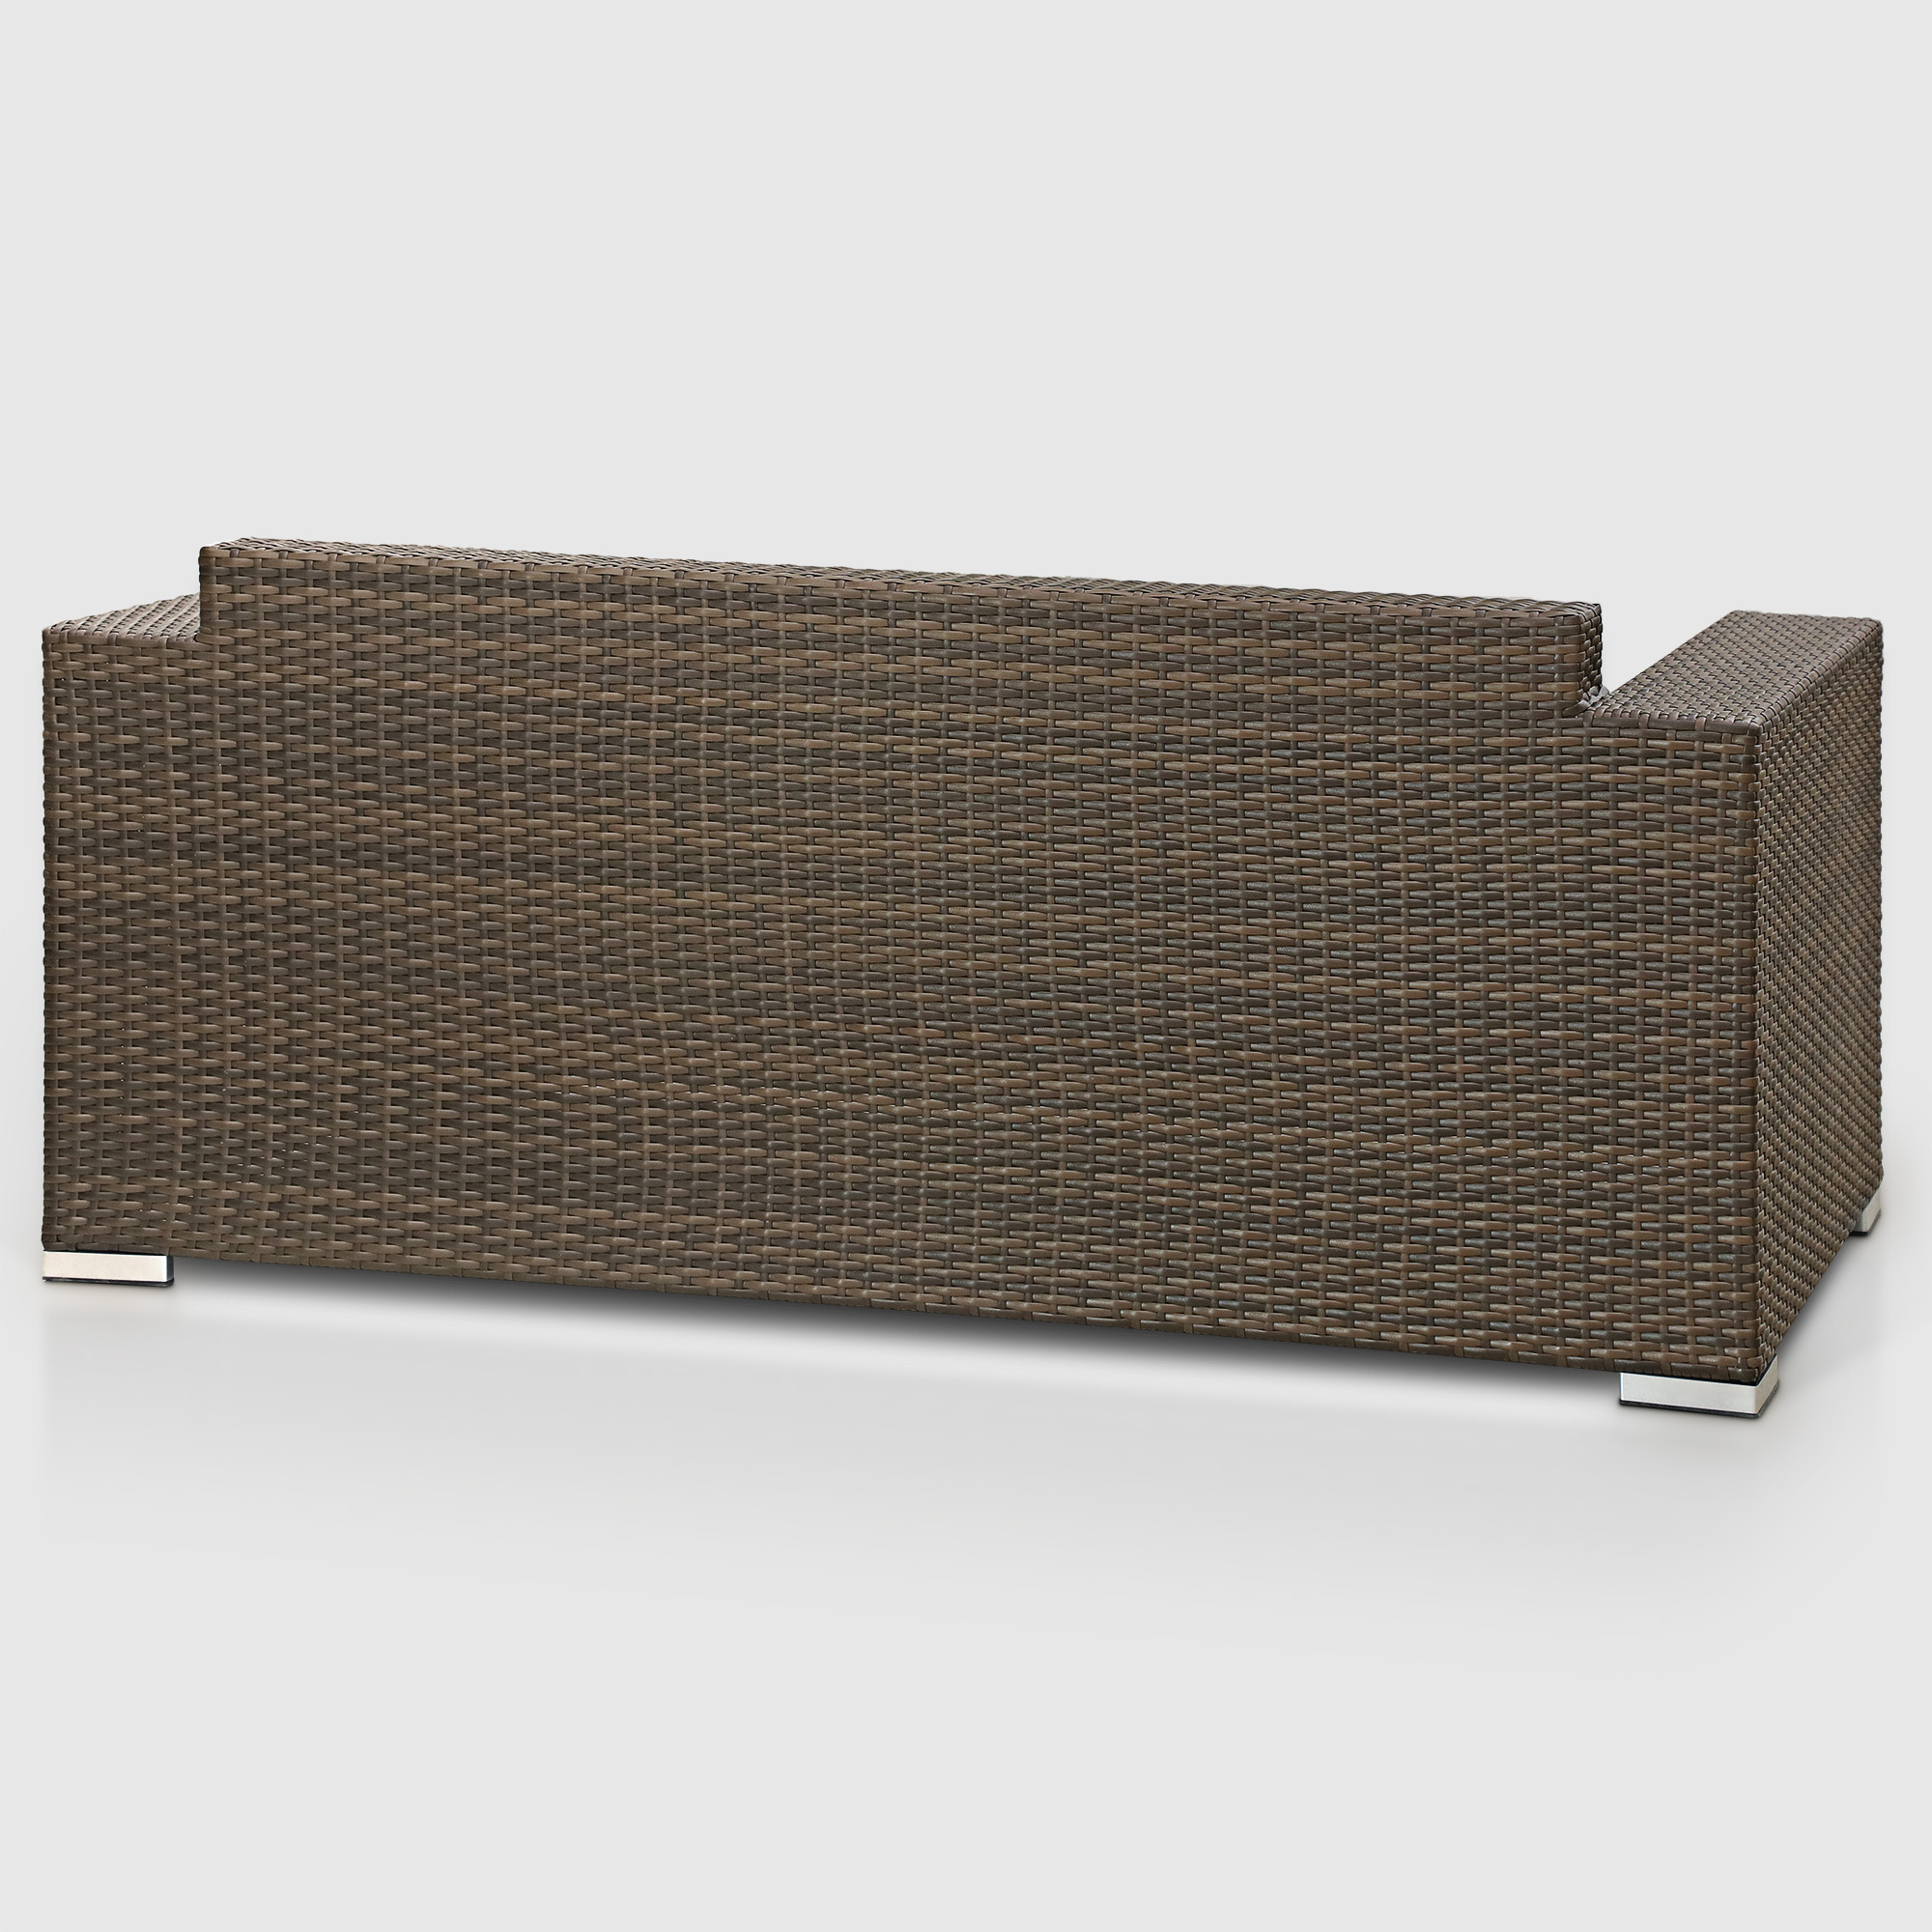 Комплект мебели Ns Rattan Cleo коричнево-бежевый 7 предметов, цвет коричневый, размер 199х68х72 - фото 9